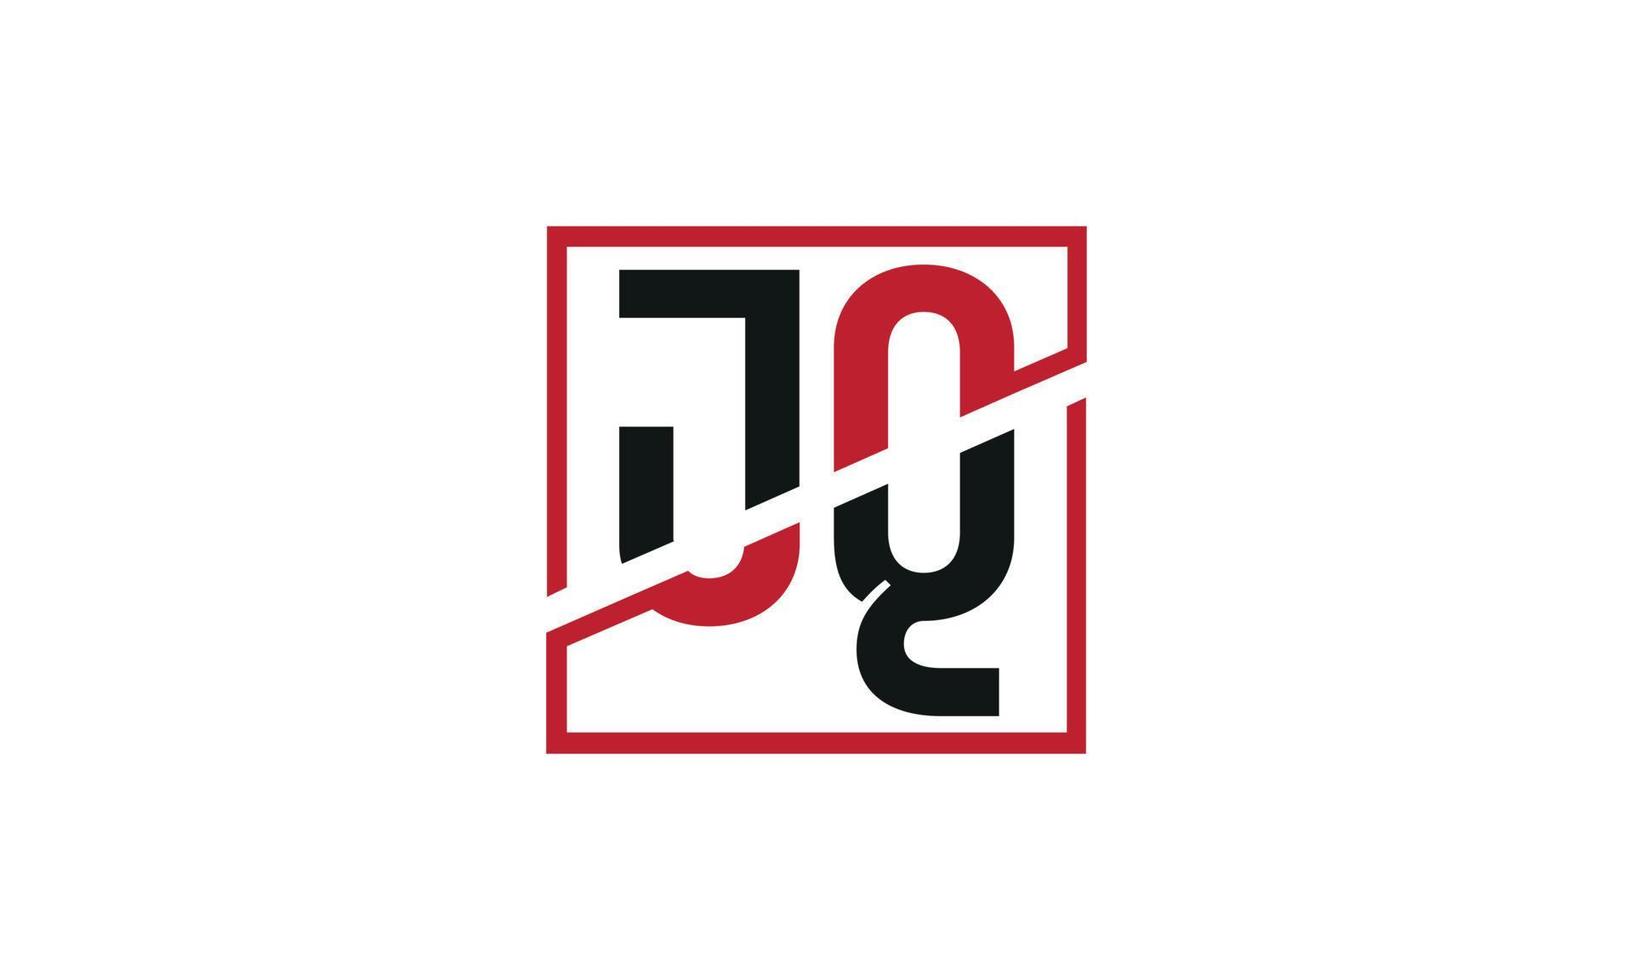 Buchstabe jq Logo pro Vektordatei pro Vektor